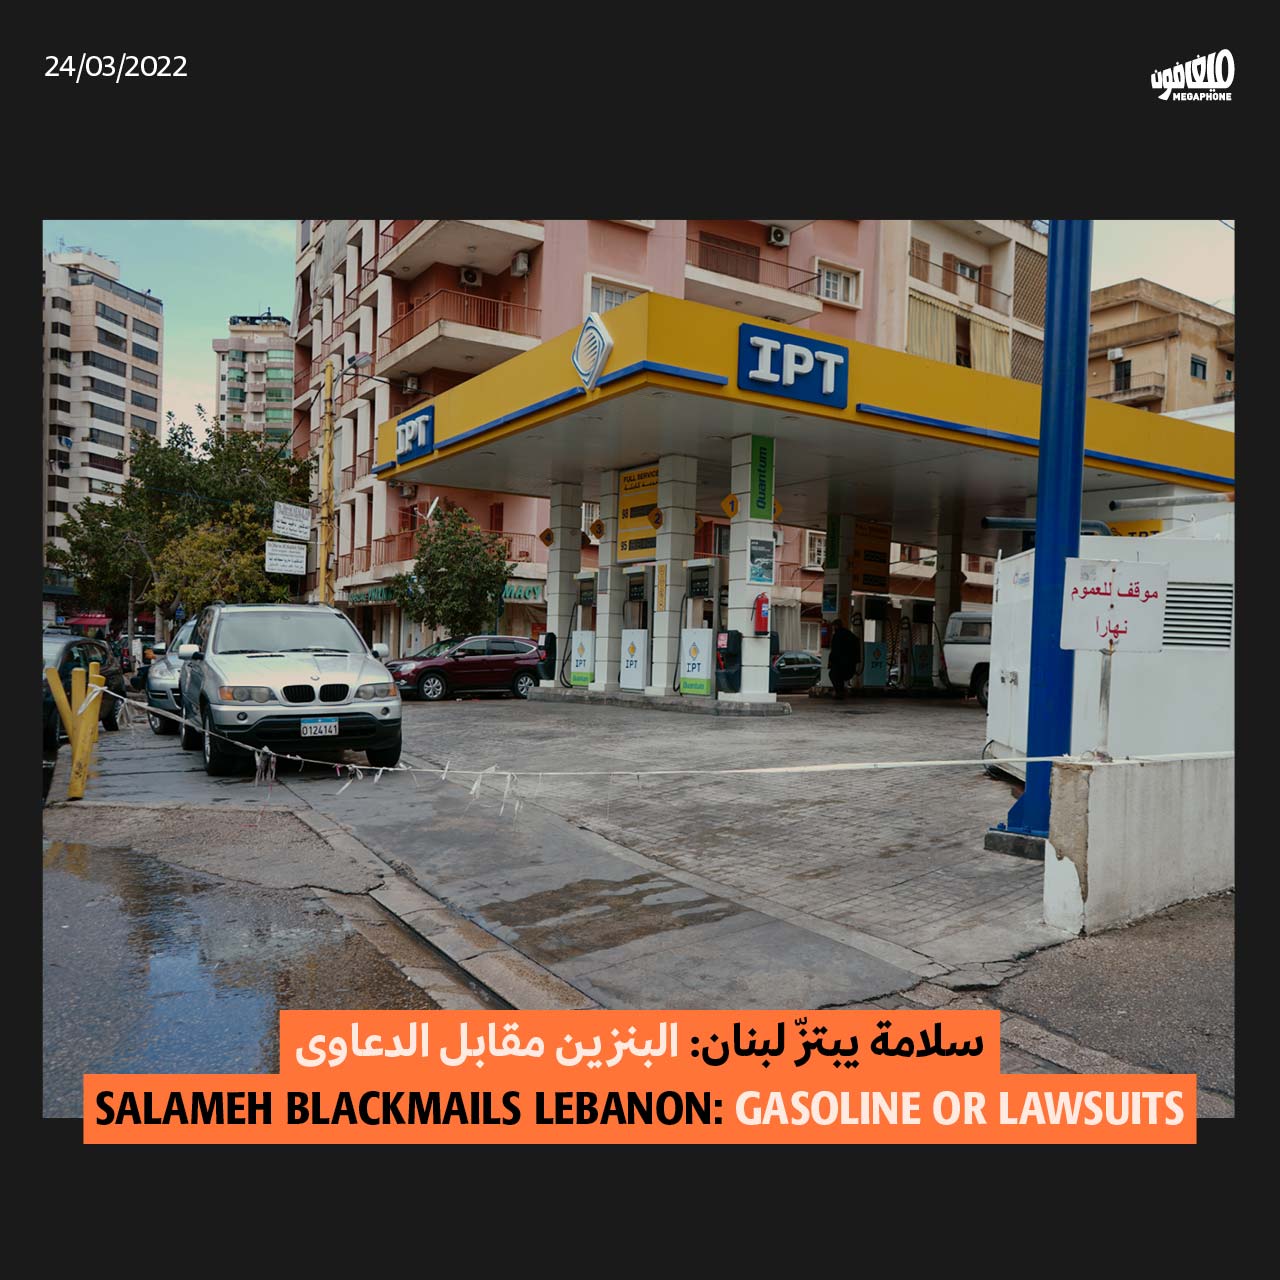 سلامة يبتزّ لبنان: البنزين مقابل الدعاوى